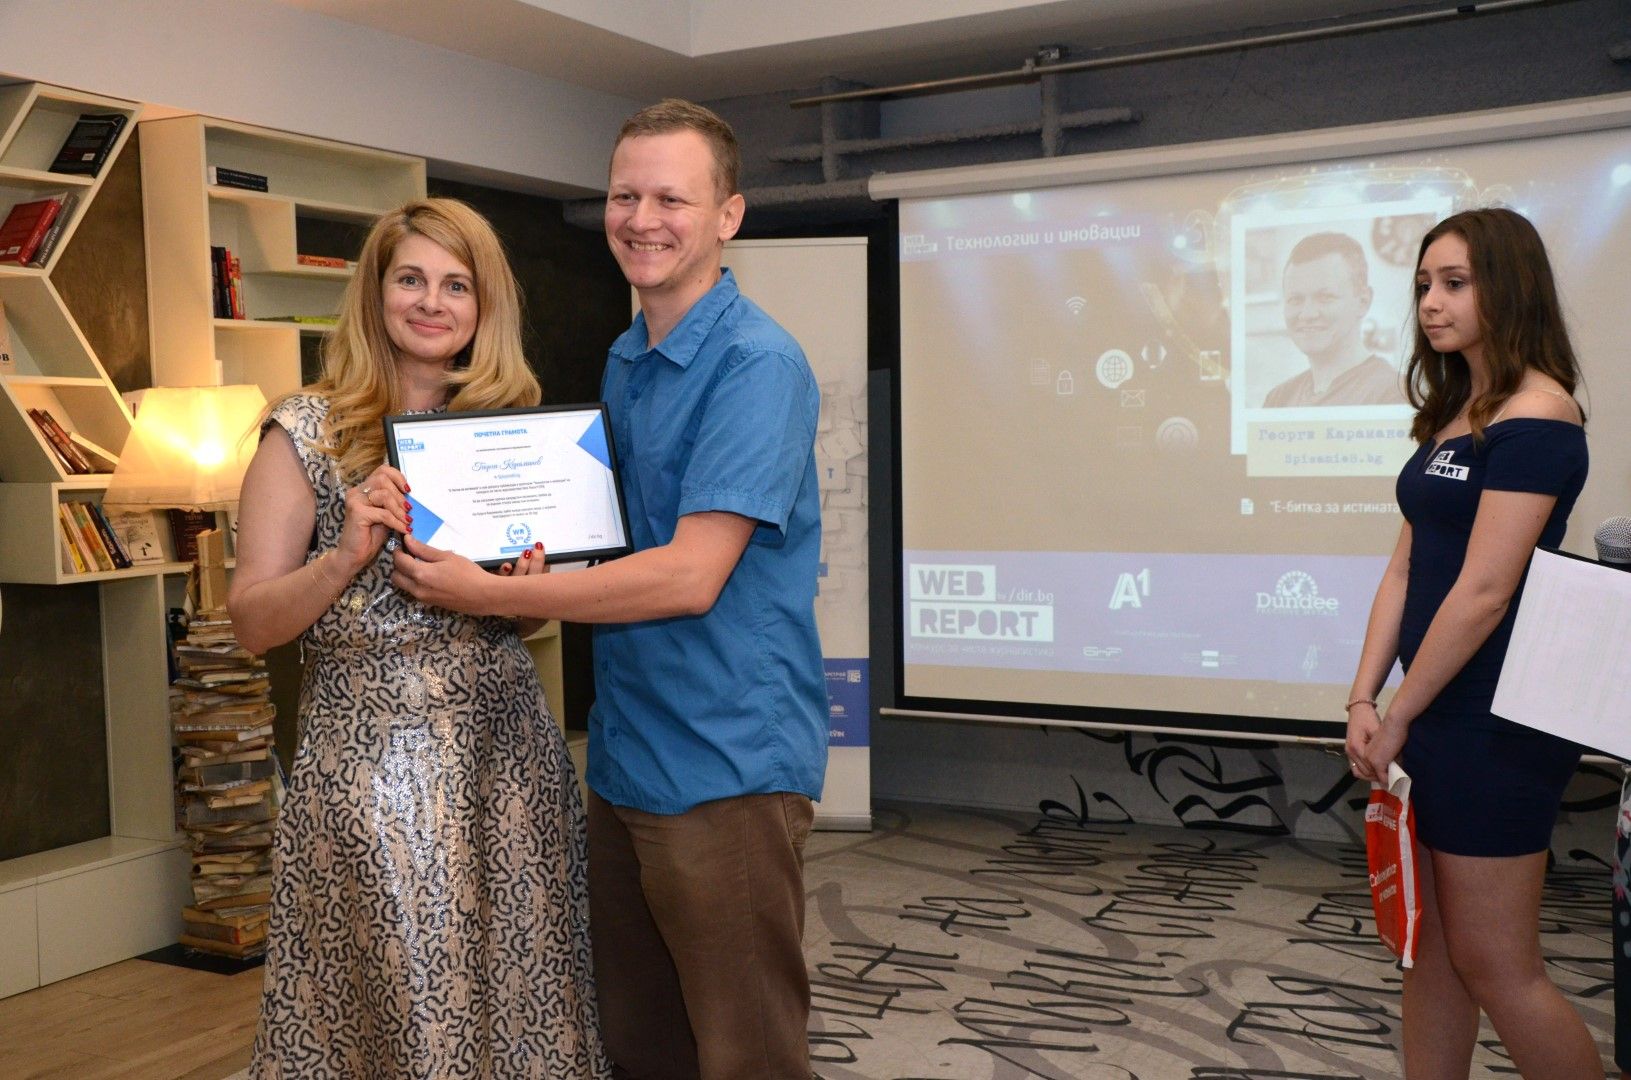 Георги Караманев получава наградата в категория "Технологии и иновации" от Илияна Захариева, директор "Корпоративни комуникации" на А1.